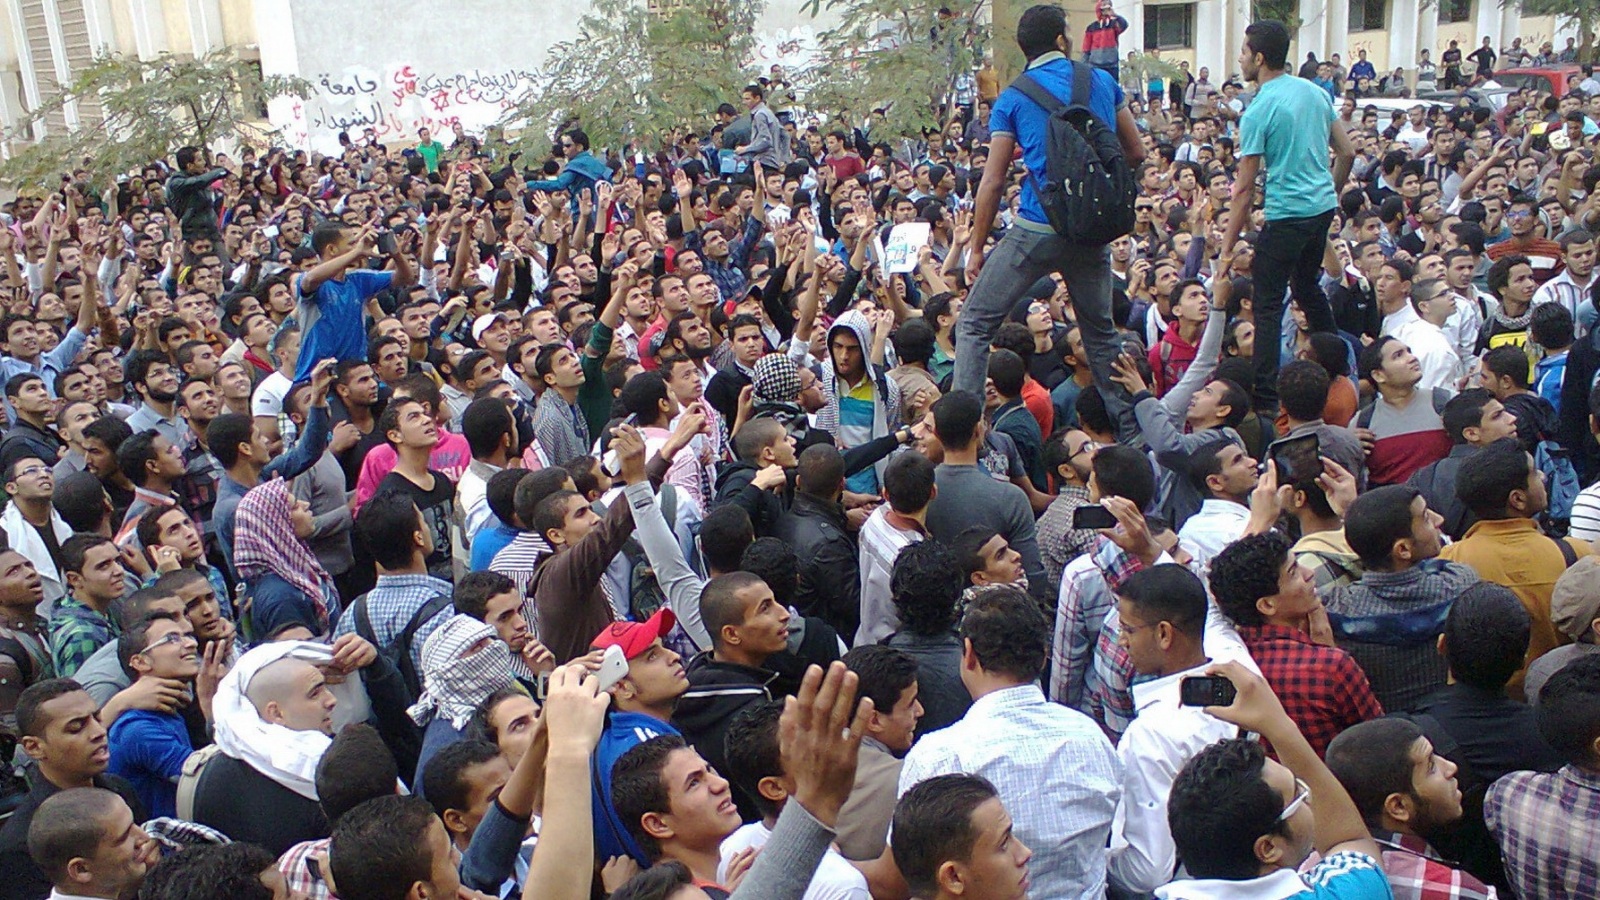 مظاهرة داخل جامعة الأزهر 2014 في القاهرة حيث أثار قانون التظاهر جدلا مجتمعيا واسعا (الجزيرة-أرشيف